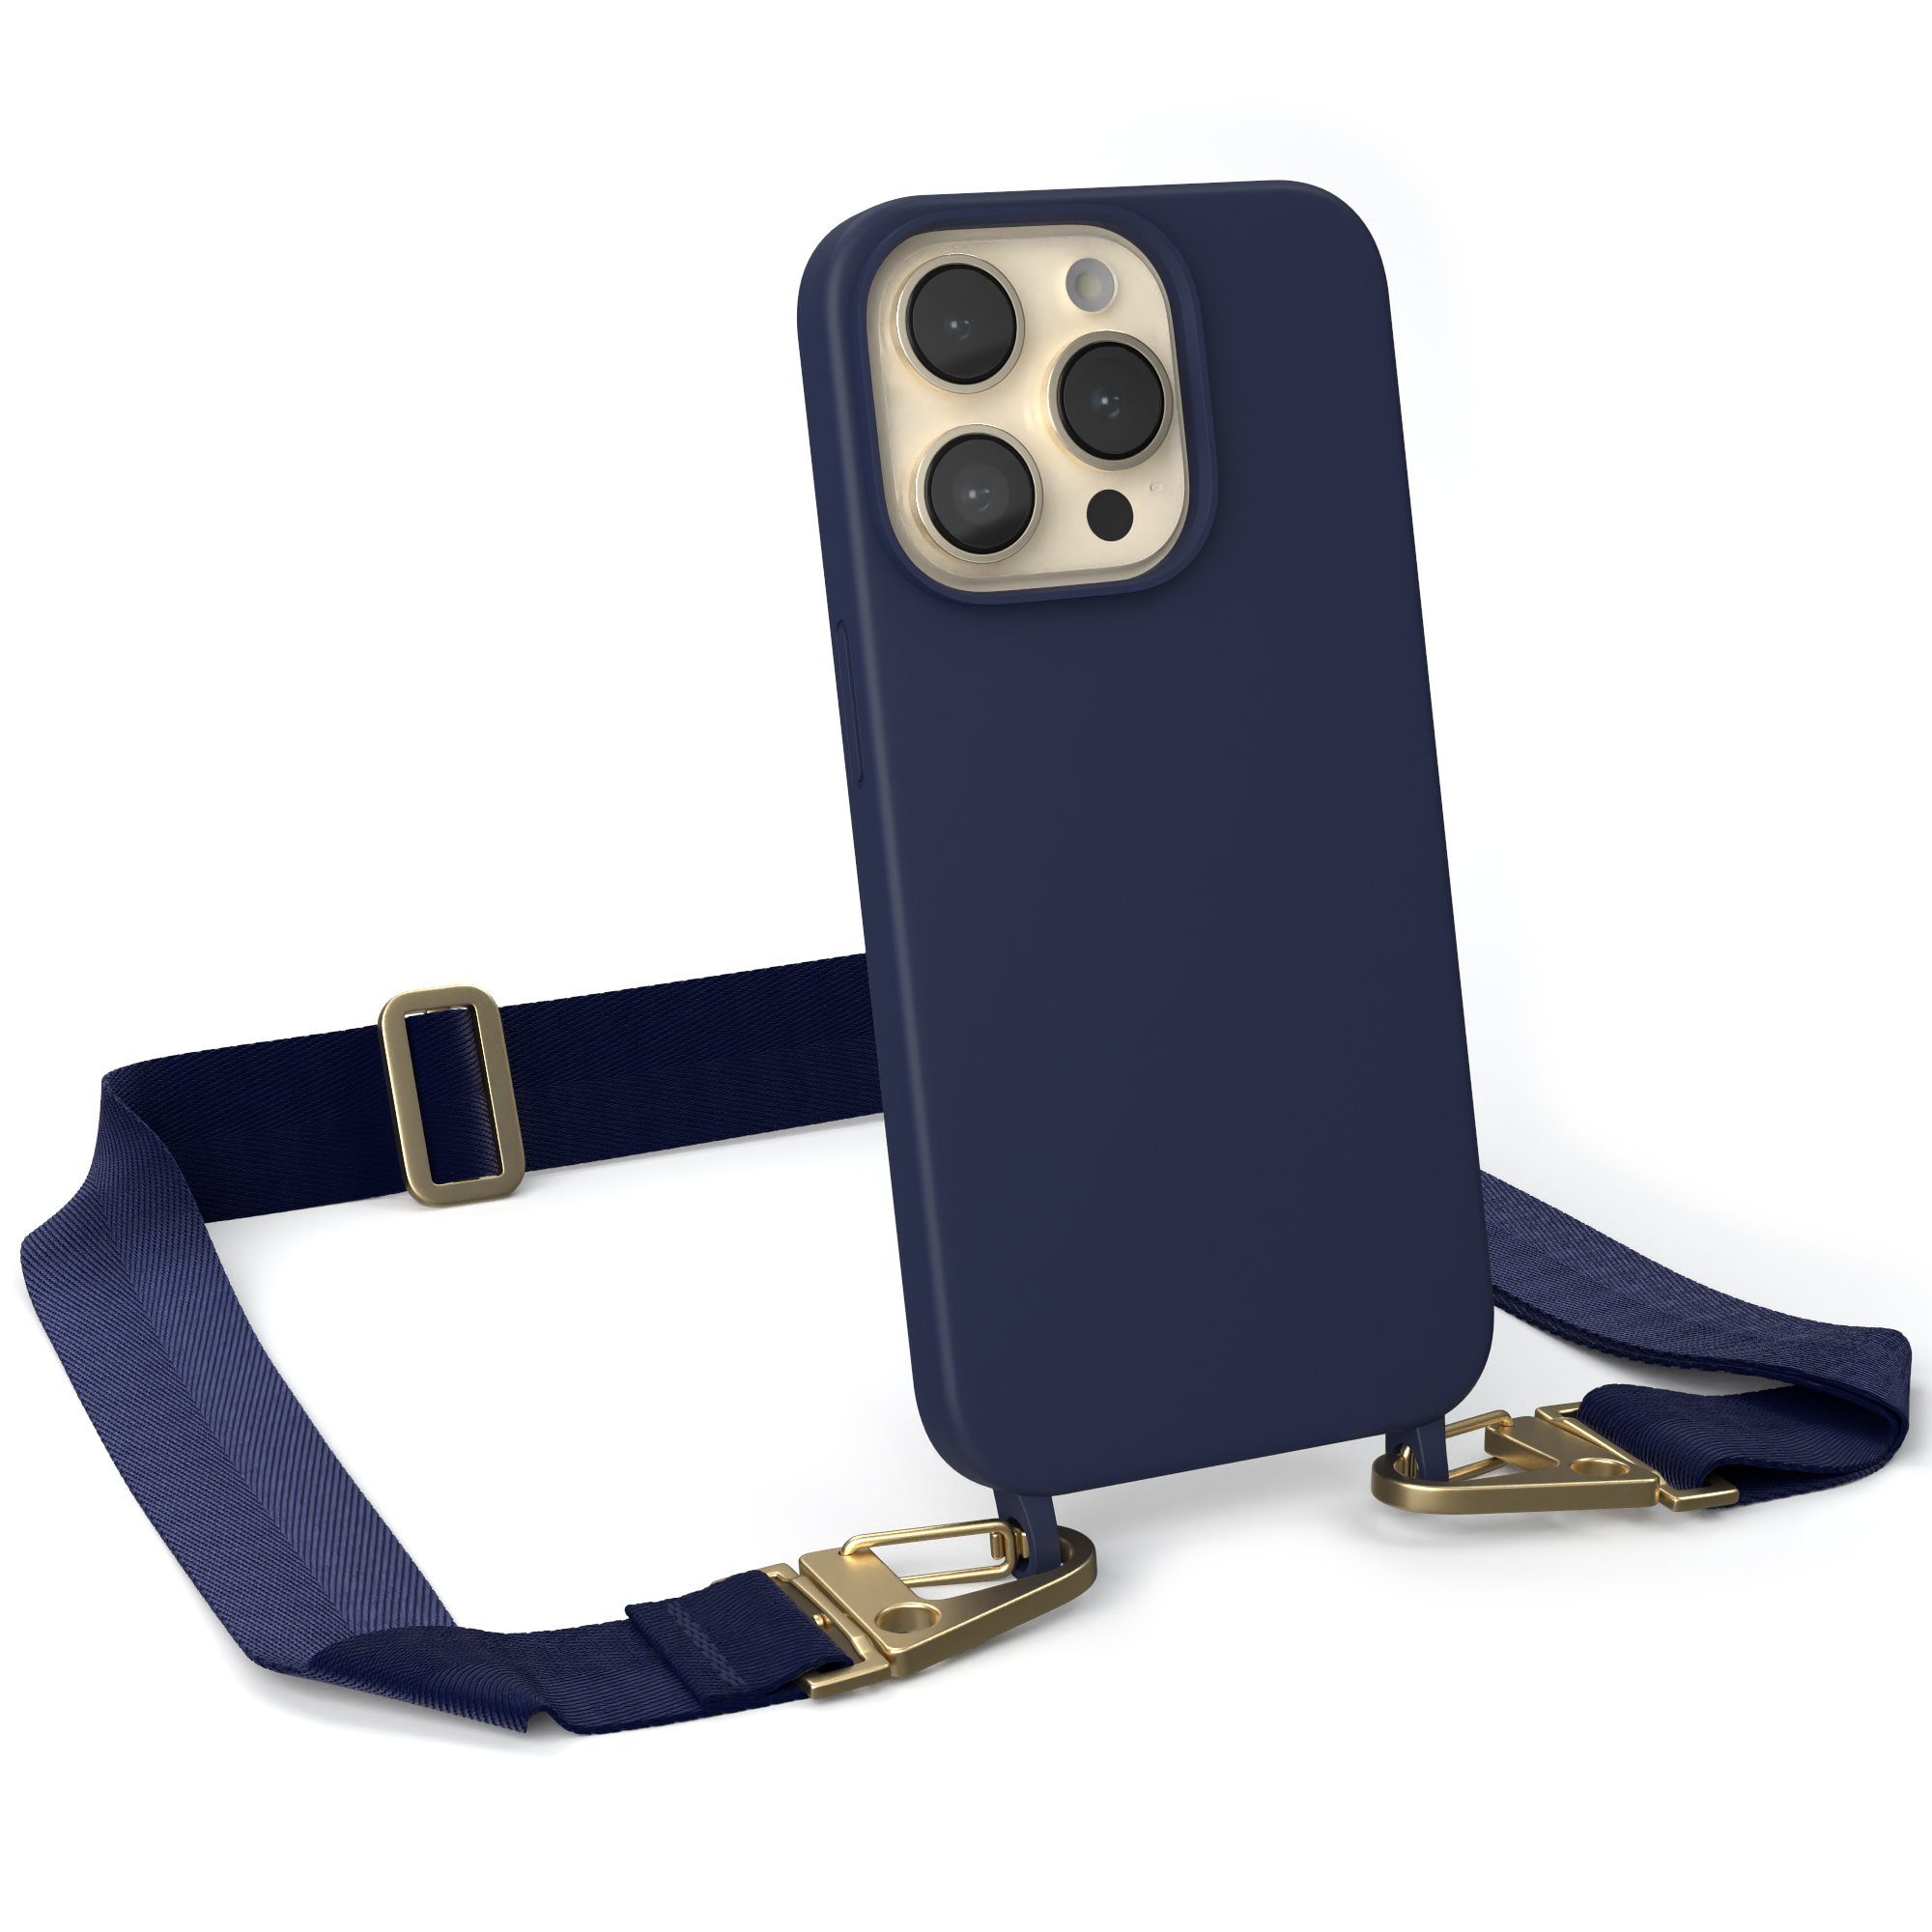 EAZY CASE Handykette Karabiner Breitband für Apple iPhone 14 Pro 6,1 Zoll, Handykette zum Umhängen Slim Phone Chain Festivalbag Smartphone Blau